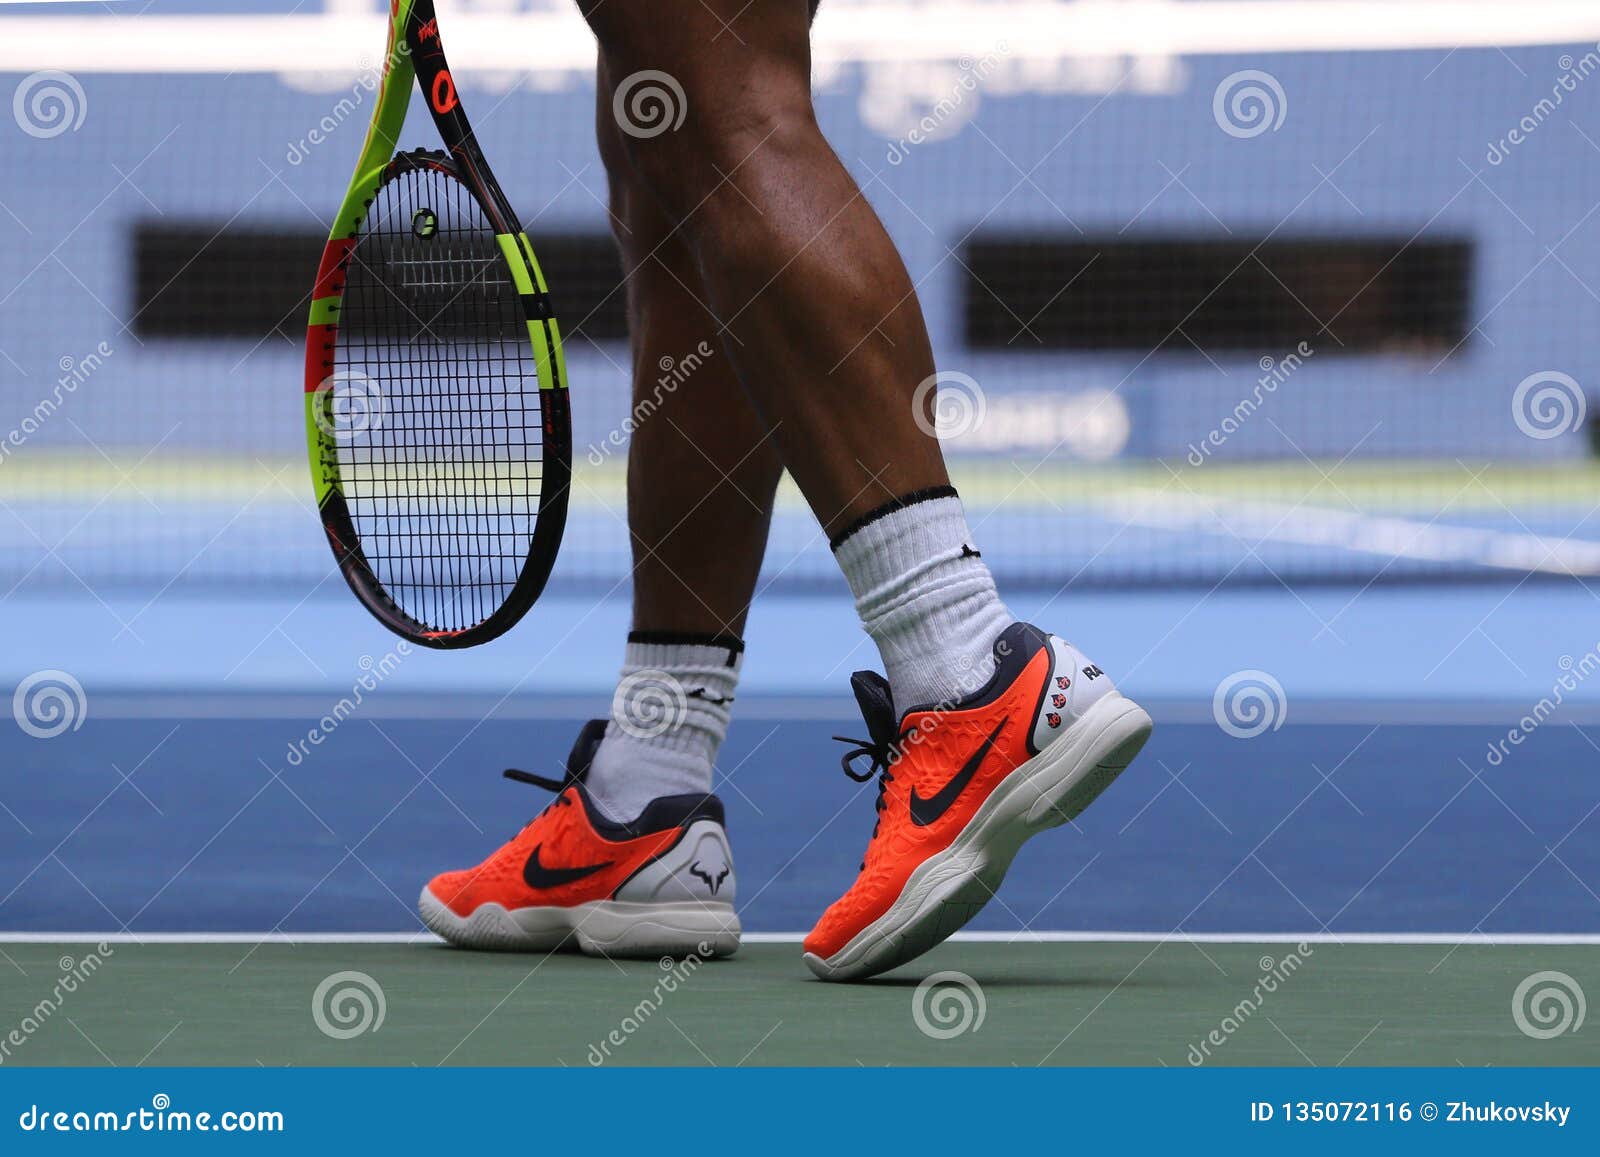 El Campeón Rafael Nadal De Grand Slam España Lleva Las Zapatos Tenis De Encargo De Nike Durante El US Open 2018 Foto - Imagen de editorial, 135072116